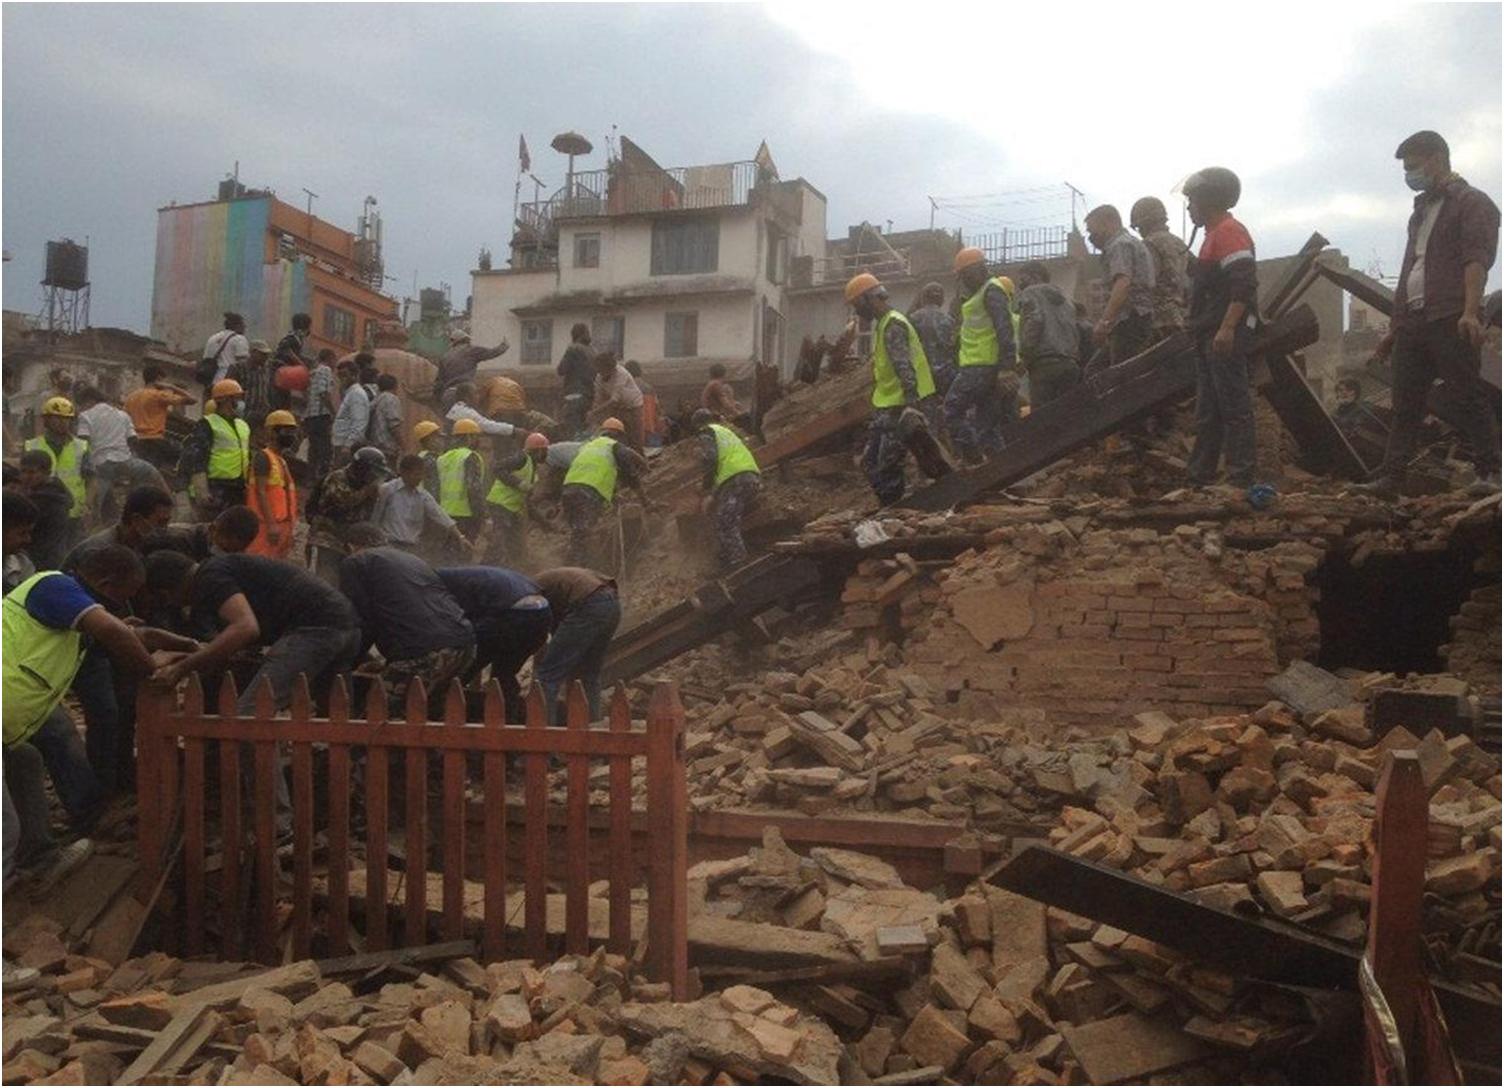 هندوراس تهتز من زلزال عنيف بدرجة 7.8 ريختر